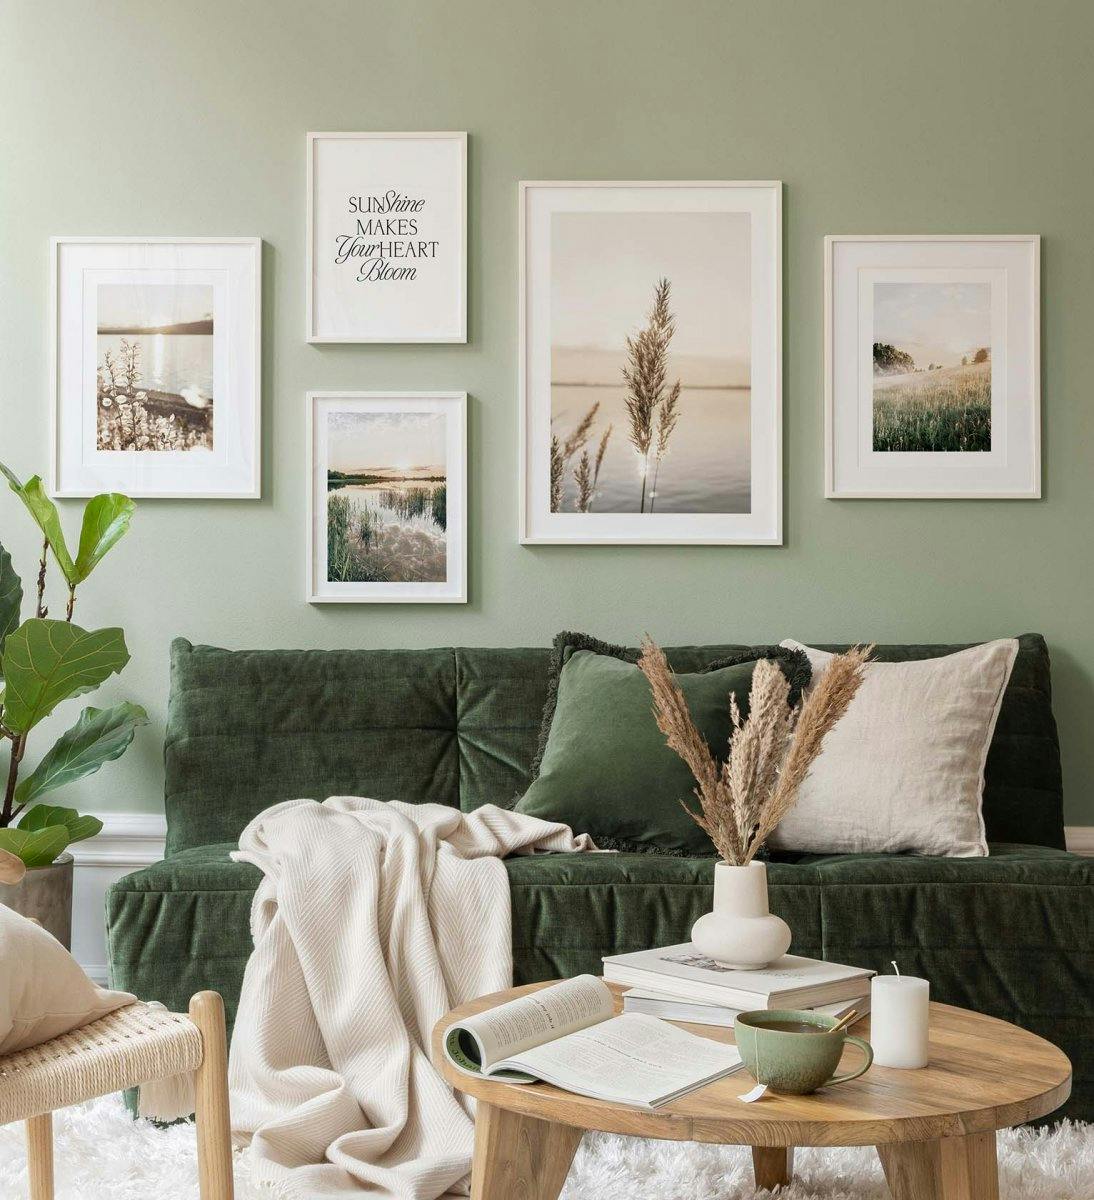 Landschaftsfotografie in grüner Stimmung schafft ein ruhiges Gefühl im Wohnzimmer